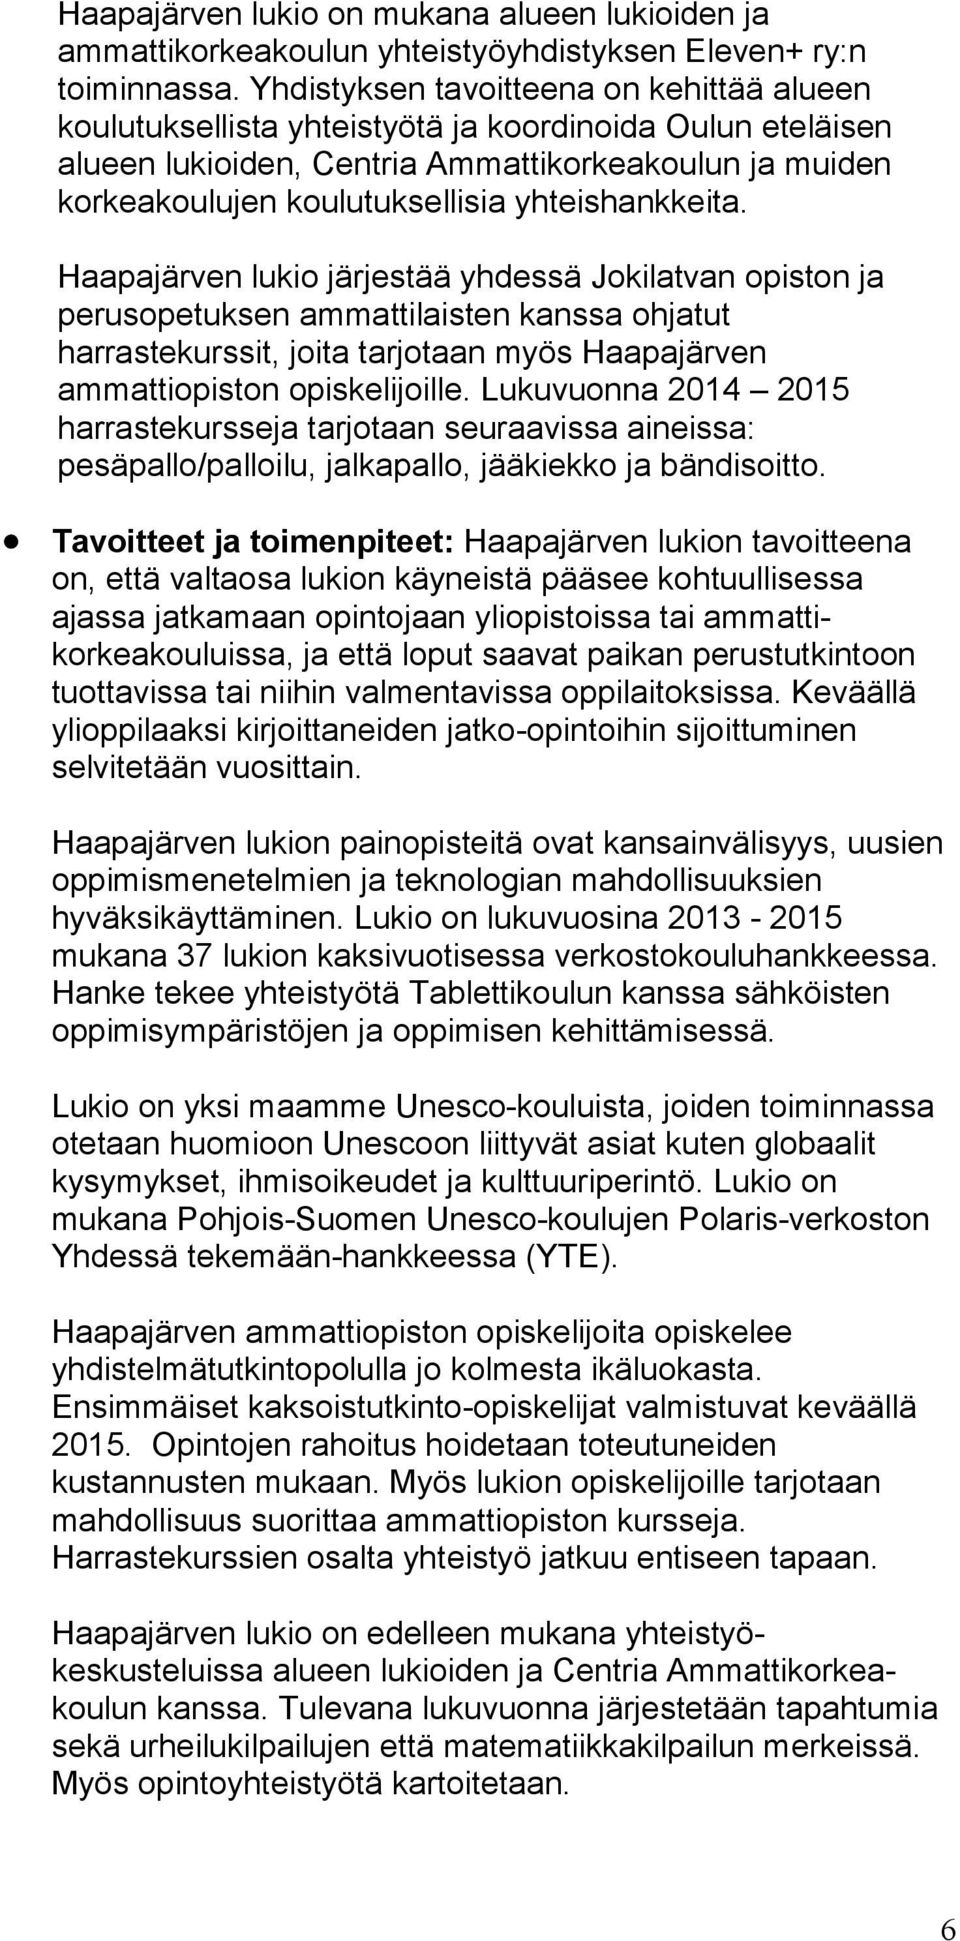 yhteishankkeita. Haapajärven lukio järjestää yhdessä Jokilatvan opiston ja perusopetuksen ammattilaisten kanssa ohjatut harrastekurssit, joita tarjotaan myös Haapajärven ammattiopiston opiskelijoille.